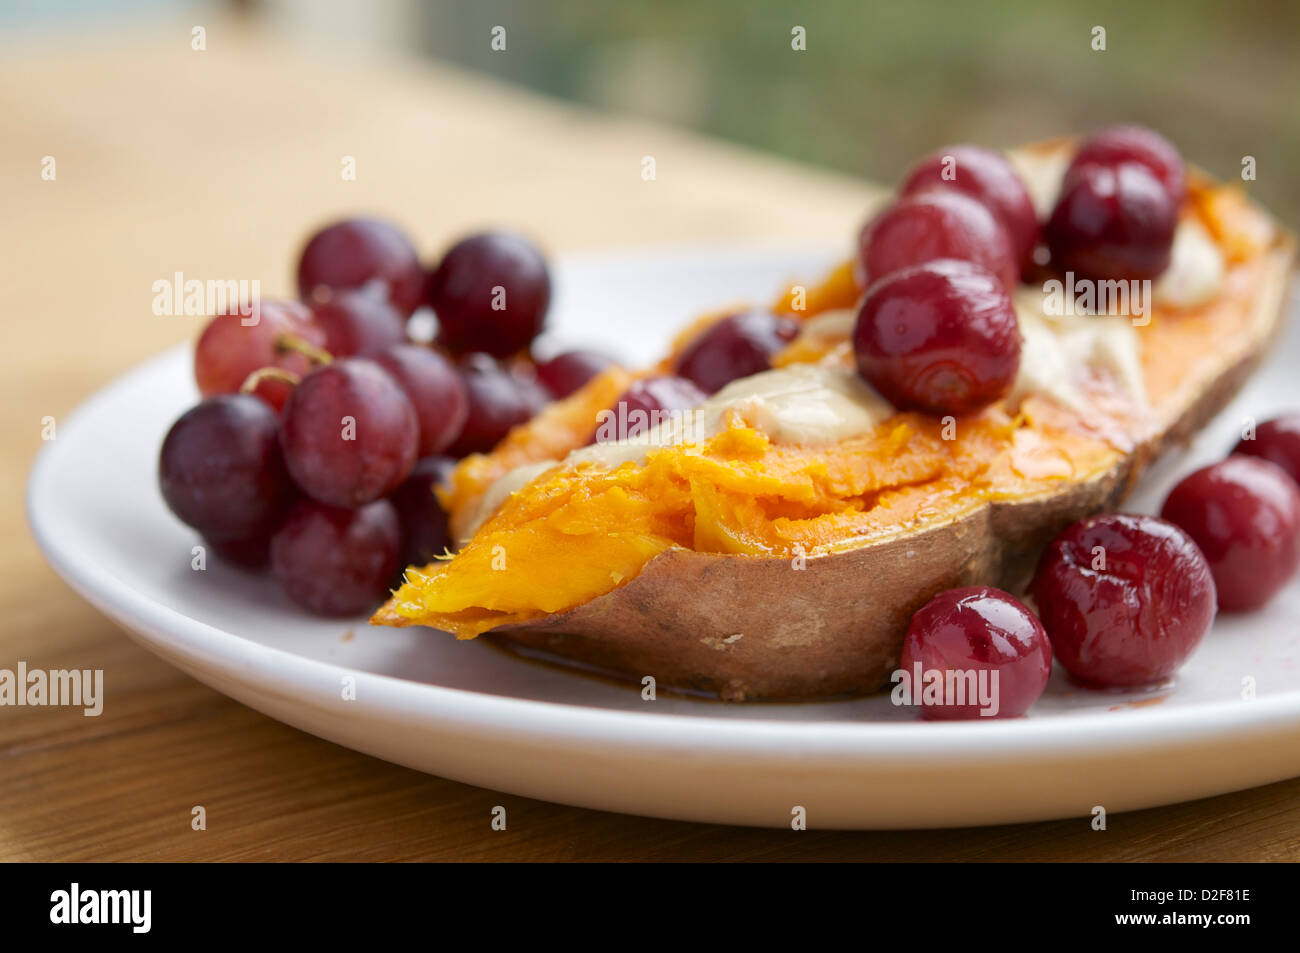 La plaque avec des patates douces rôties rempli de raisins avec une sauce au fromage vegan et sirop d'érable Banque D'Images